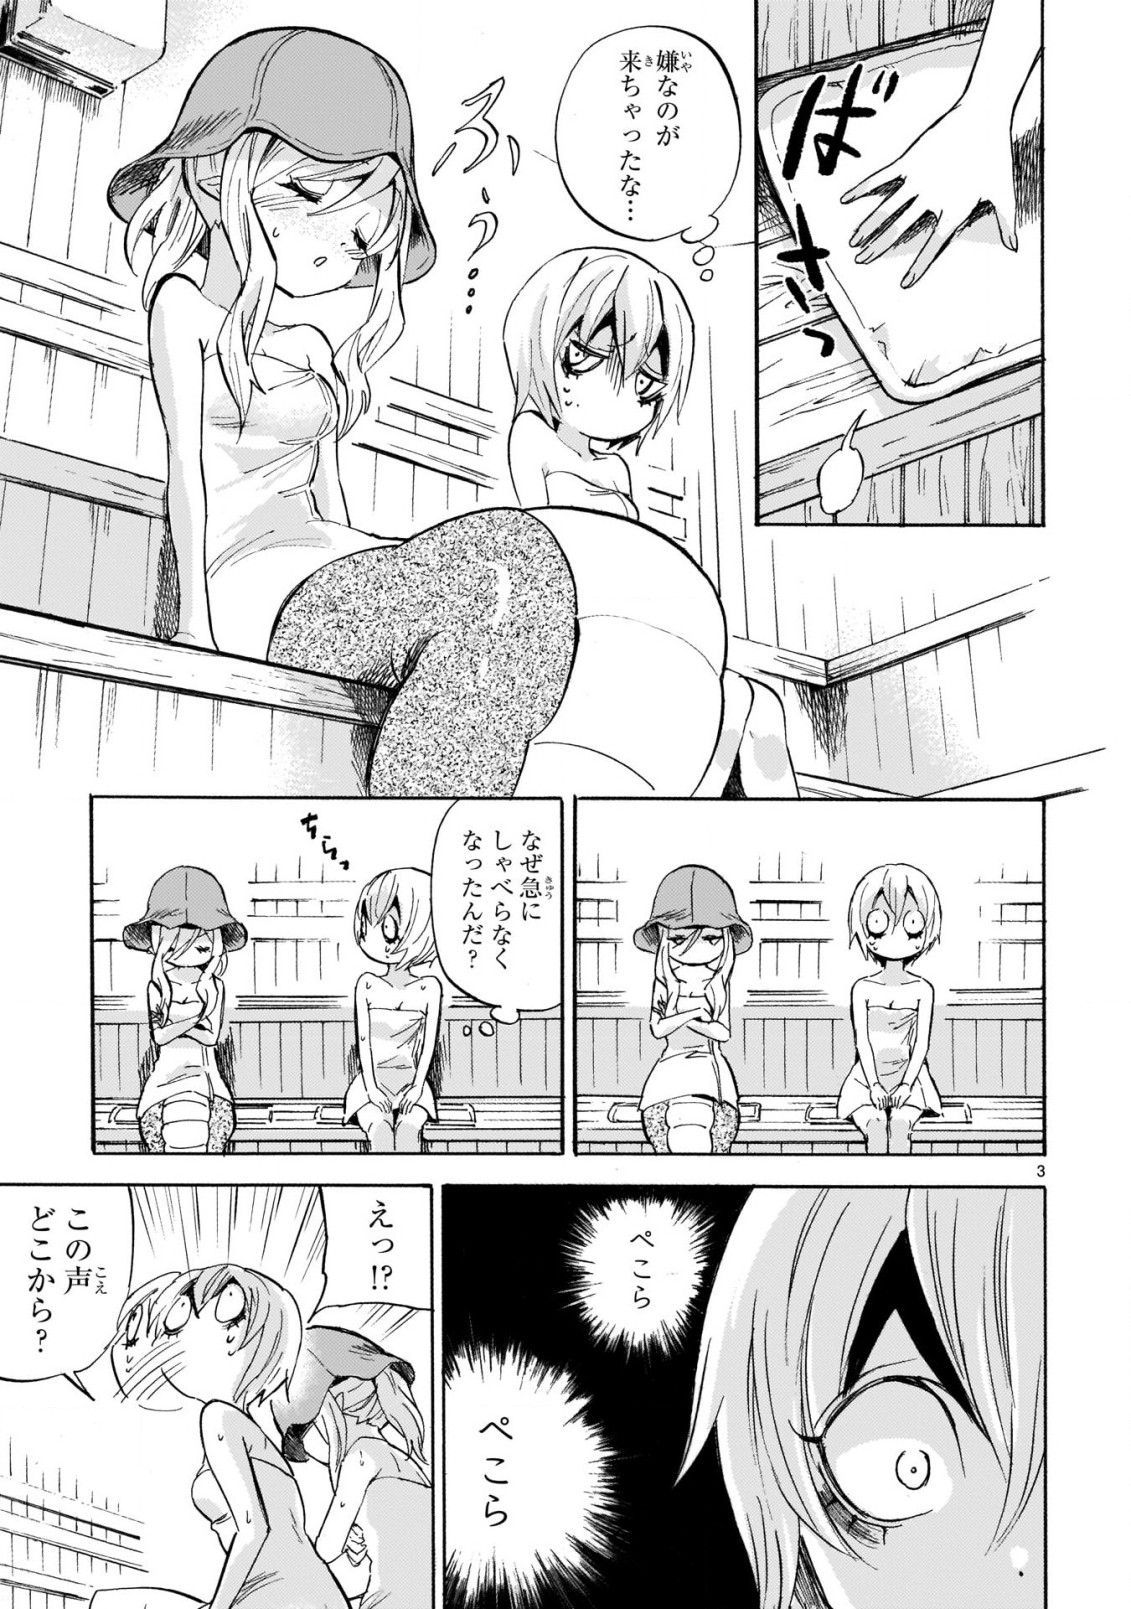 Jashin-chan Dropkick - Chapter 222 - Page 3